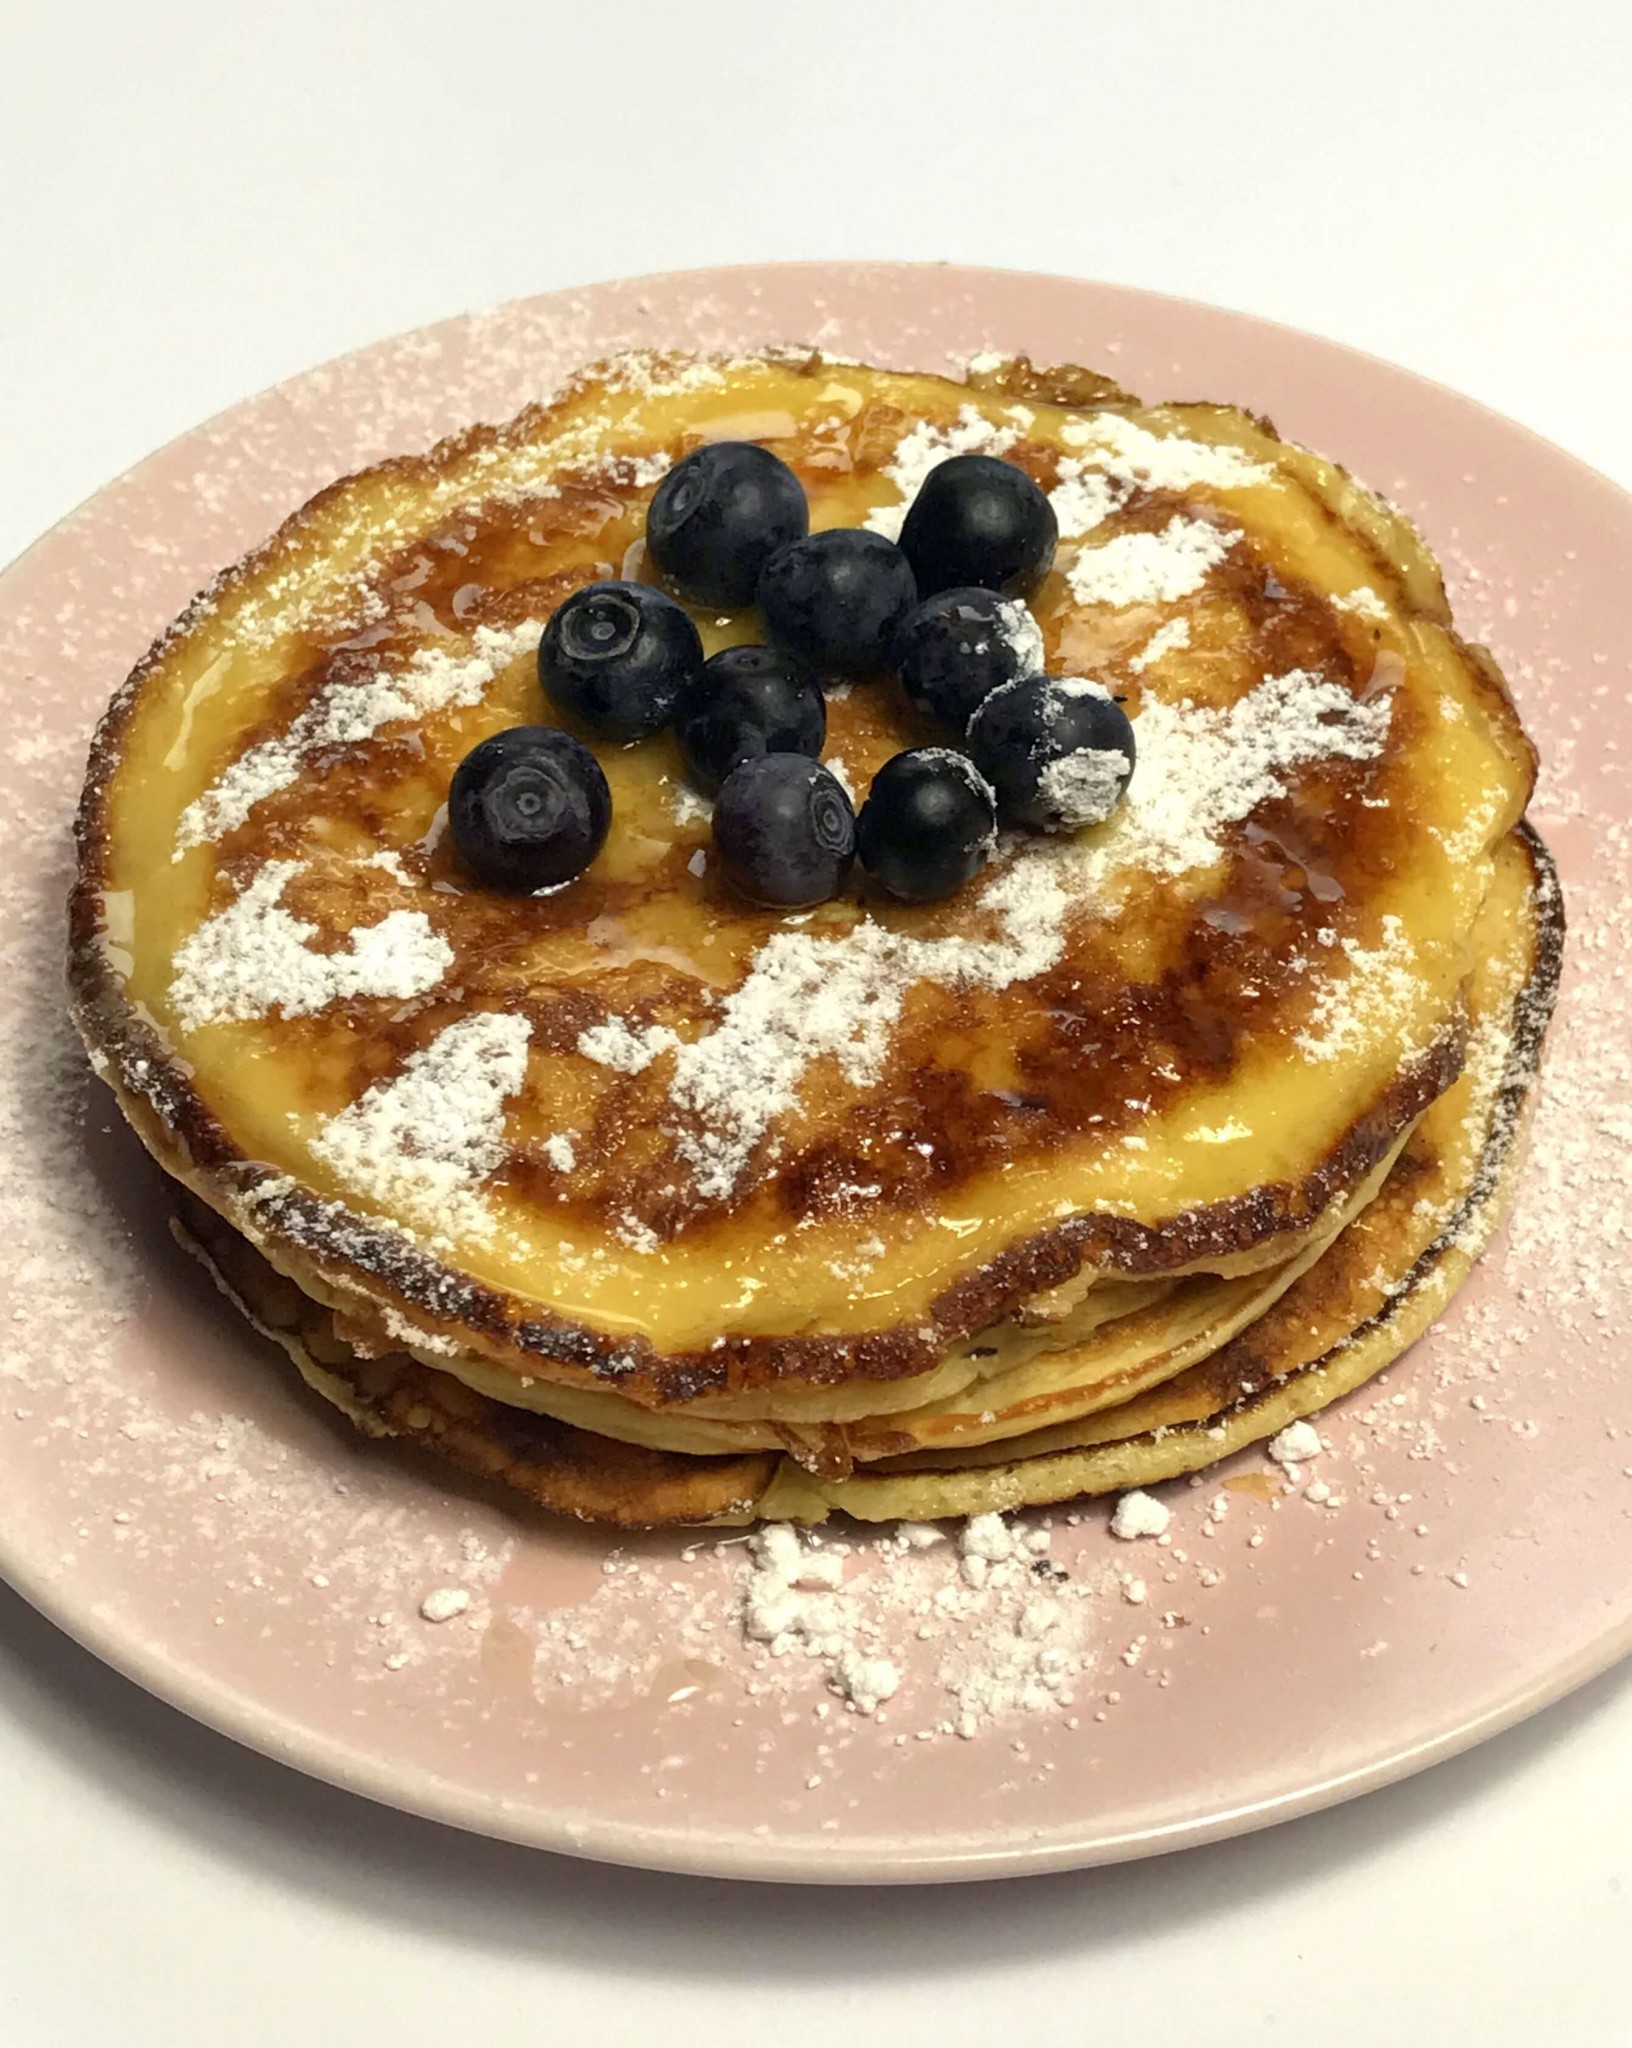 Fluffige Buttermilch Pancakes - als Valentinsfrühstück? Oder einfach so?